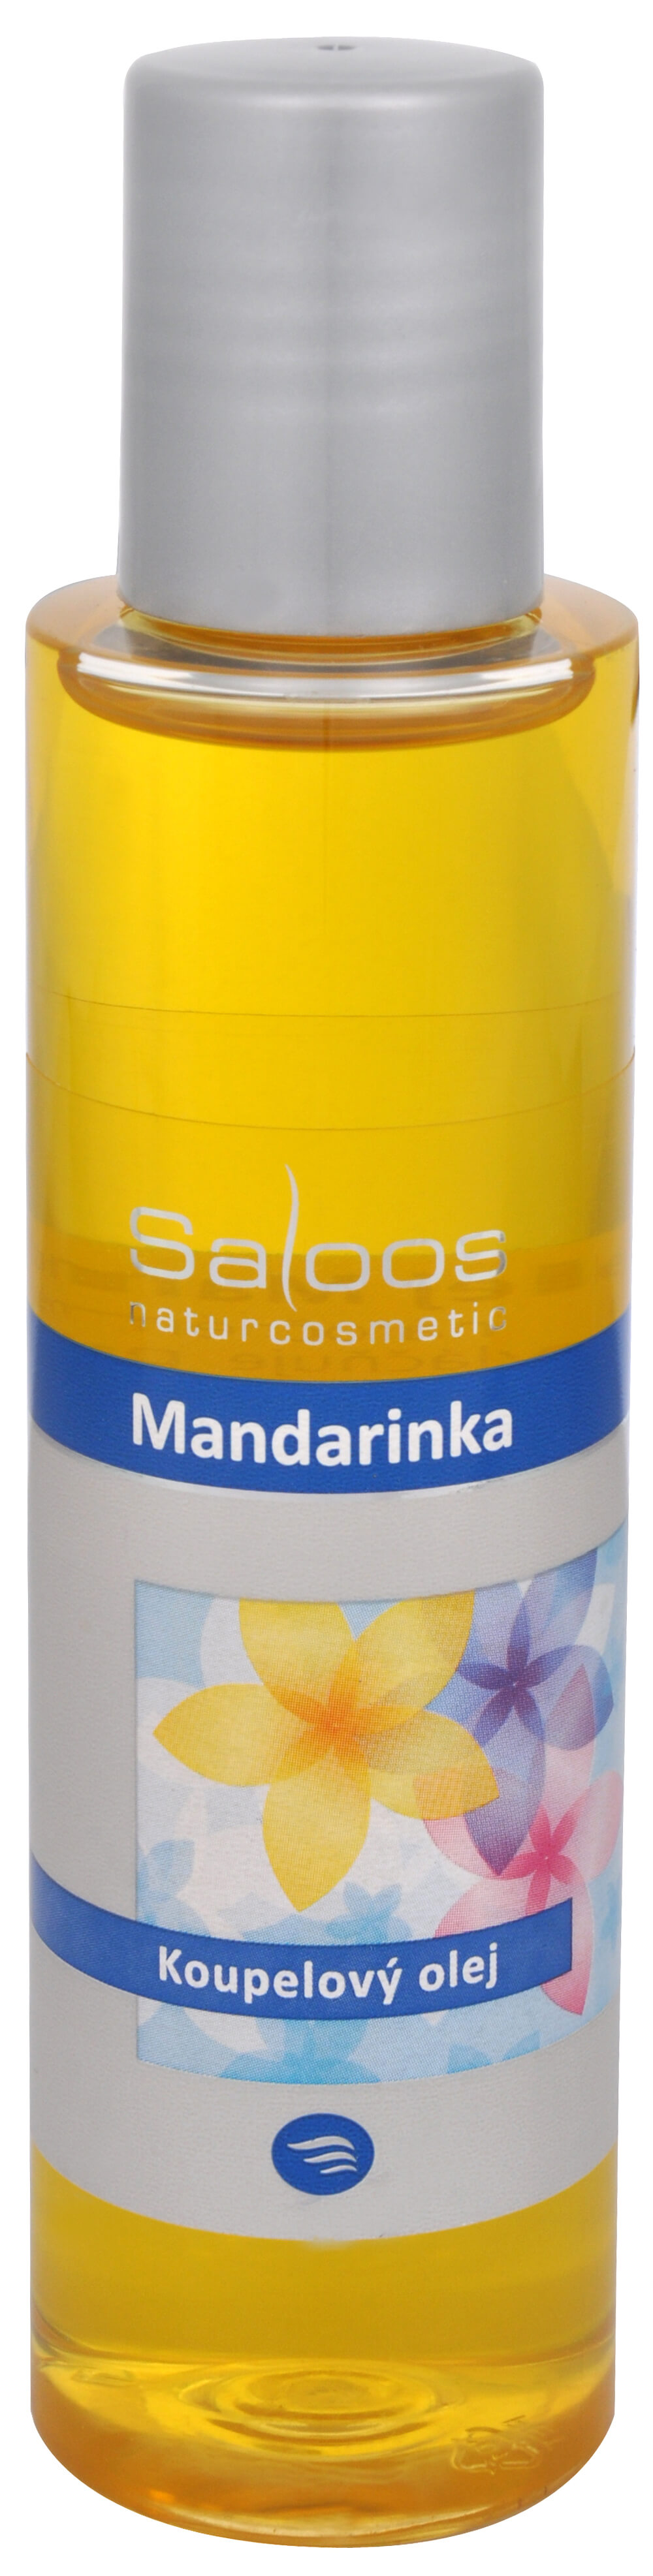 Saloos Koupelový olej - Mandarinka 125 ml